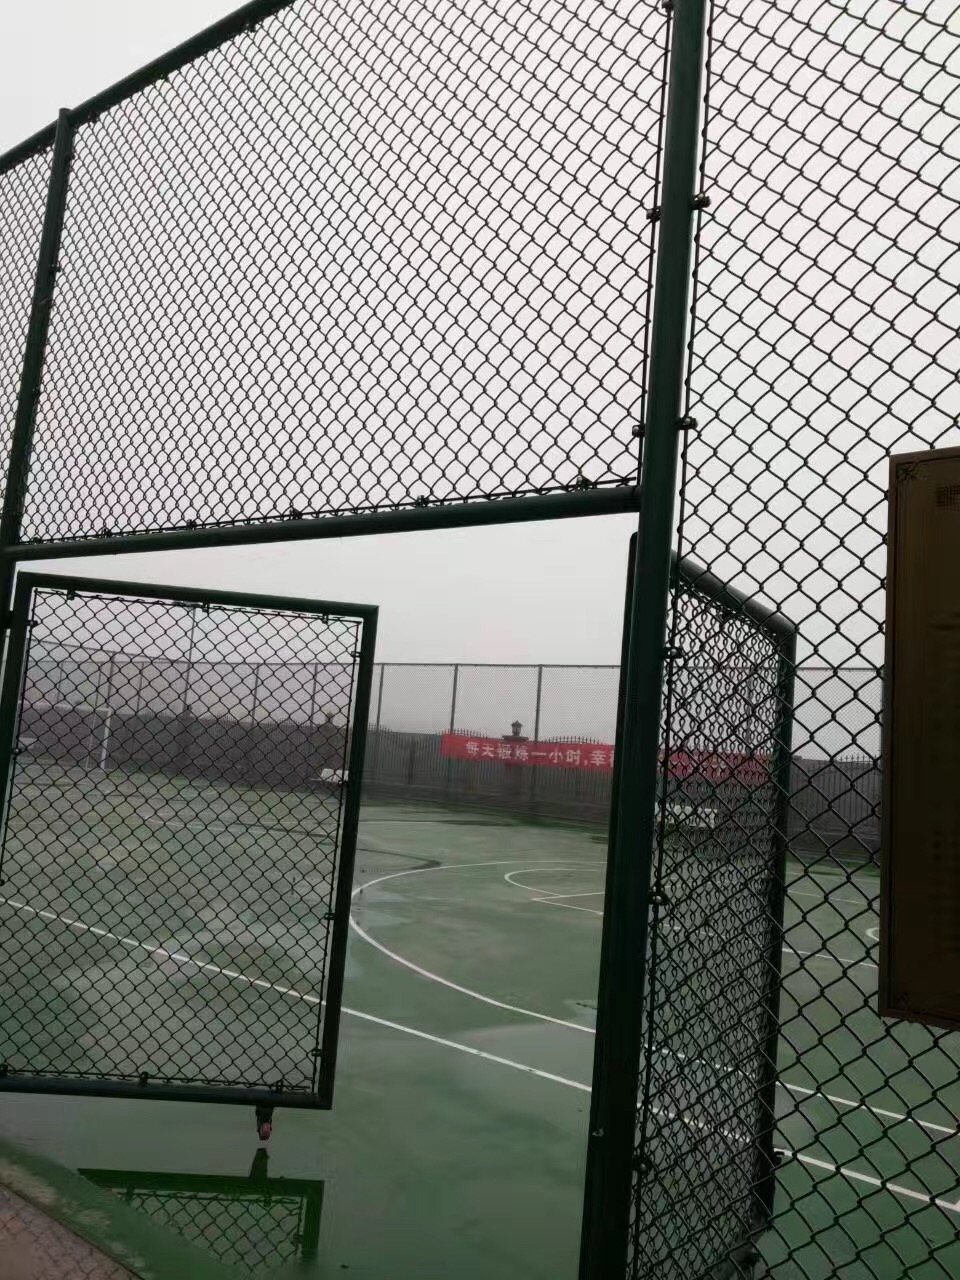 网球场围网